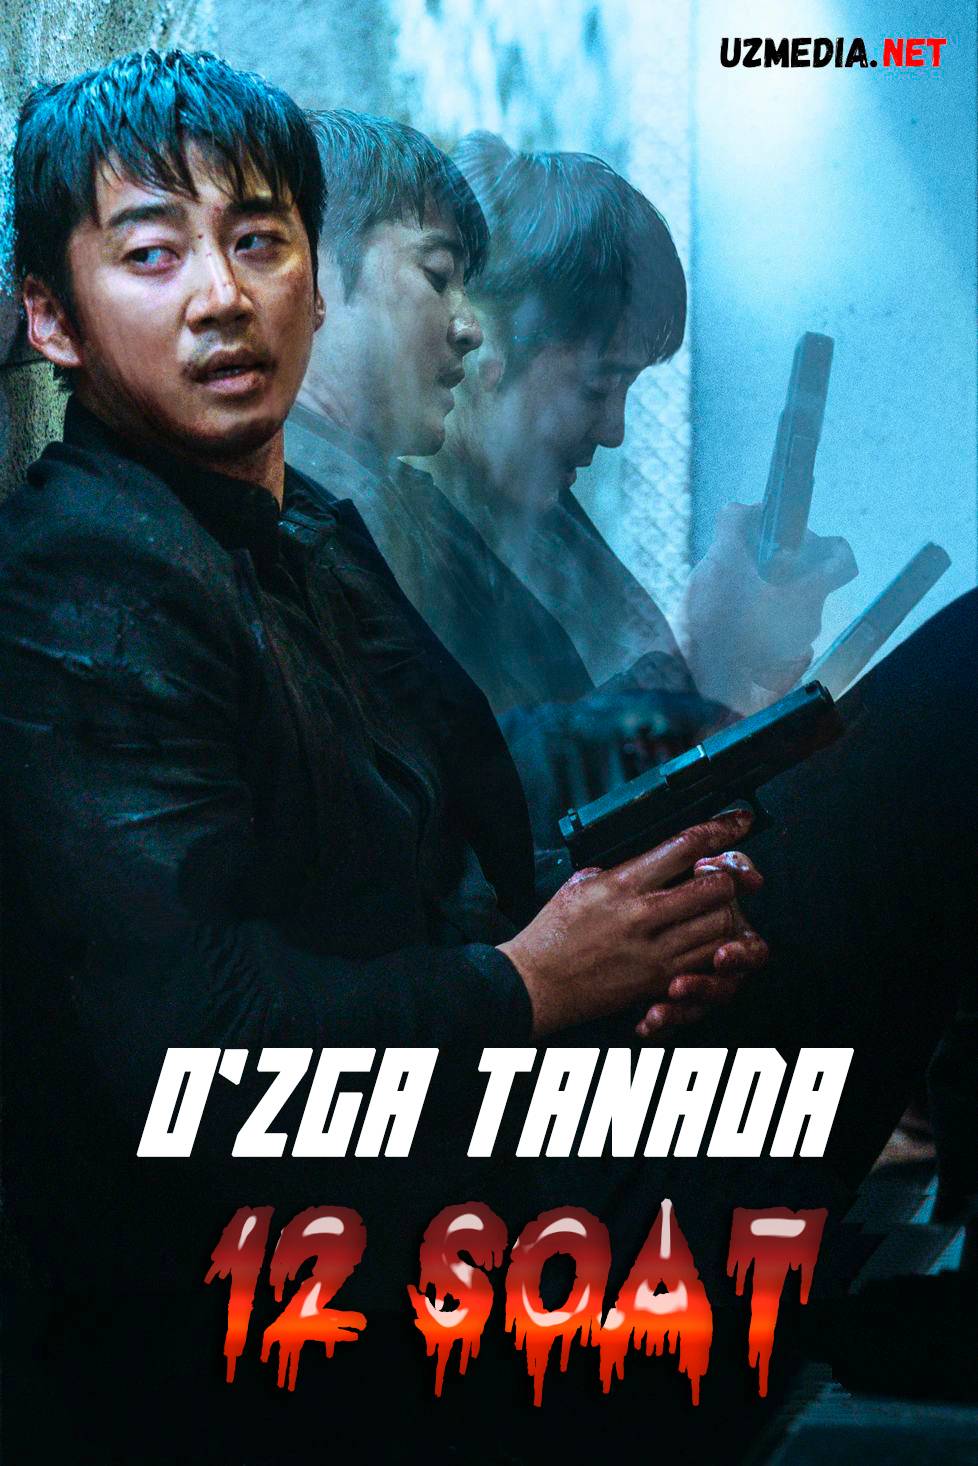 O'zga tanada 12 soat Koreya filmi Uzbek tilida 2021 O'zbekcha tarjima kino Full HD skachat